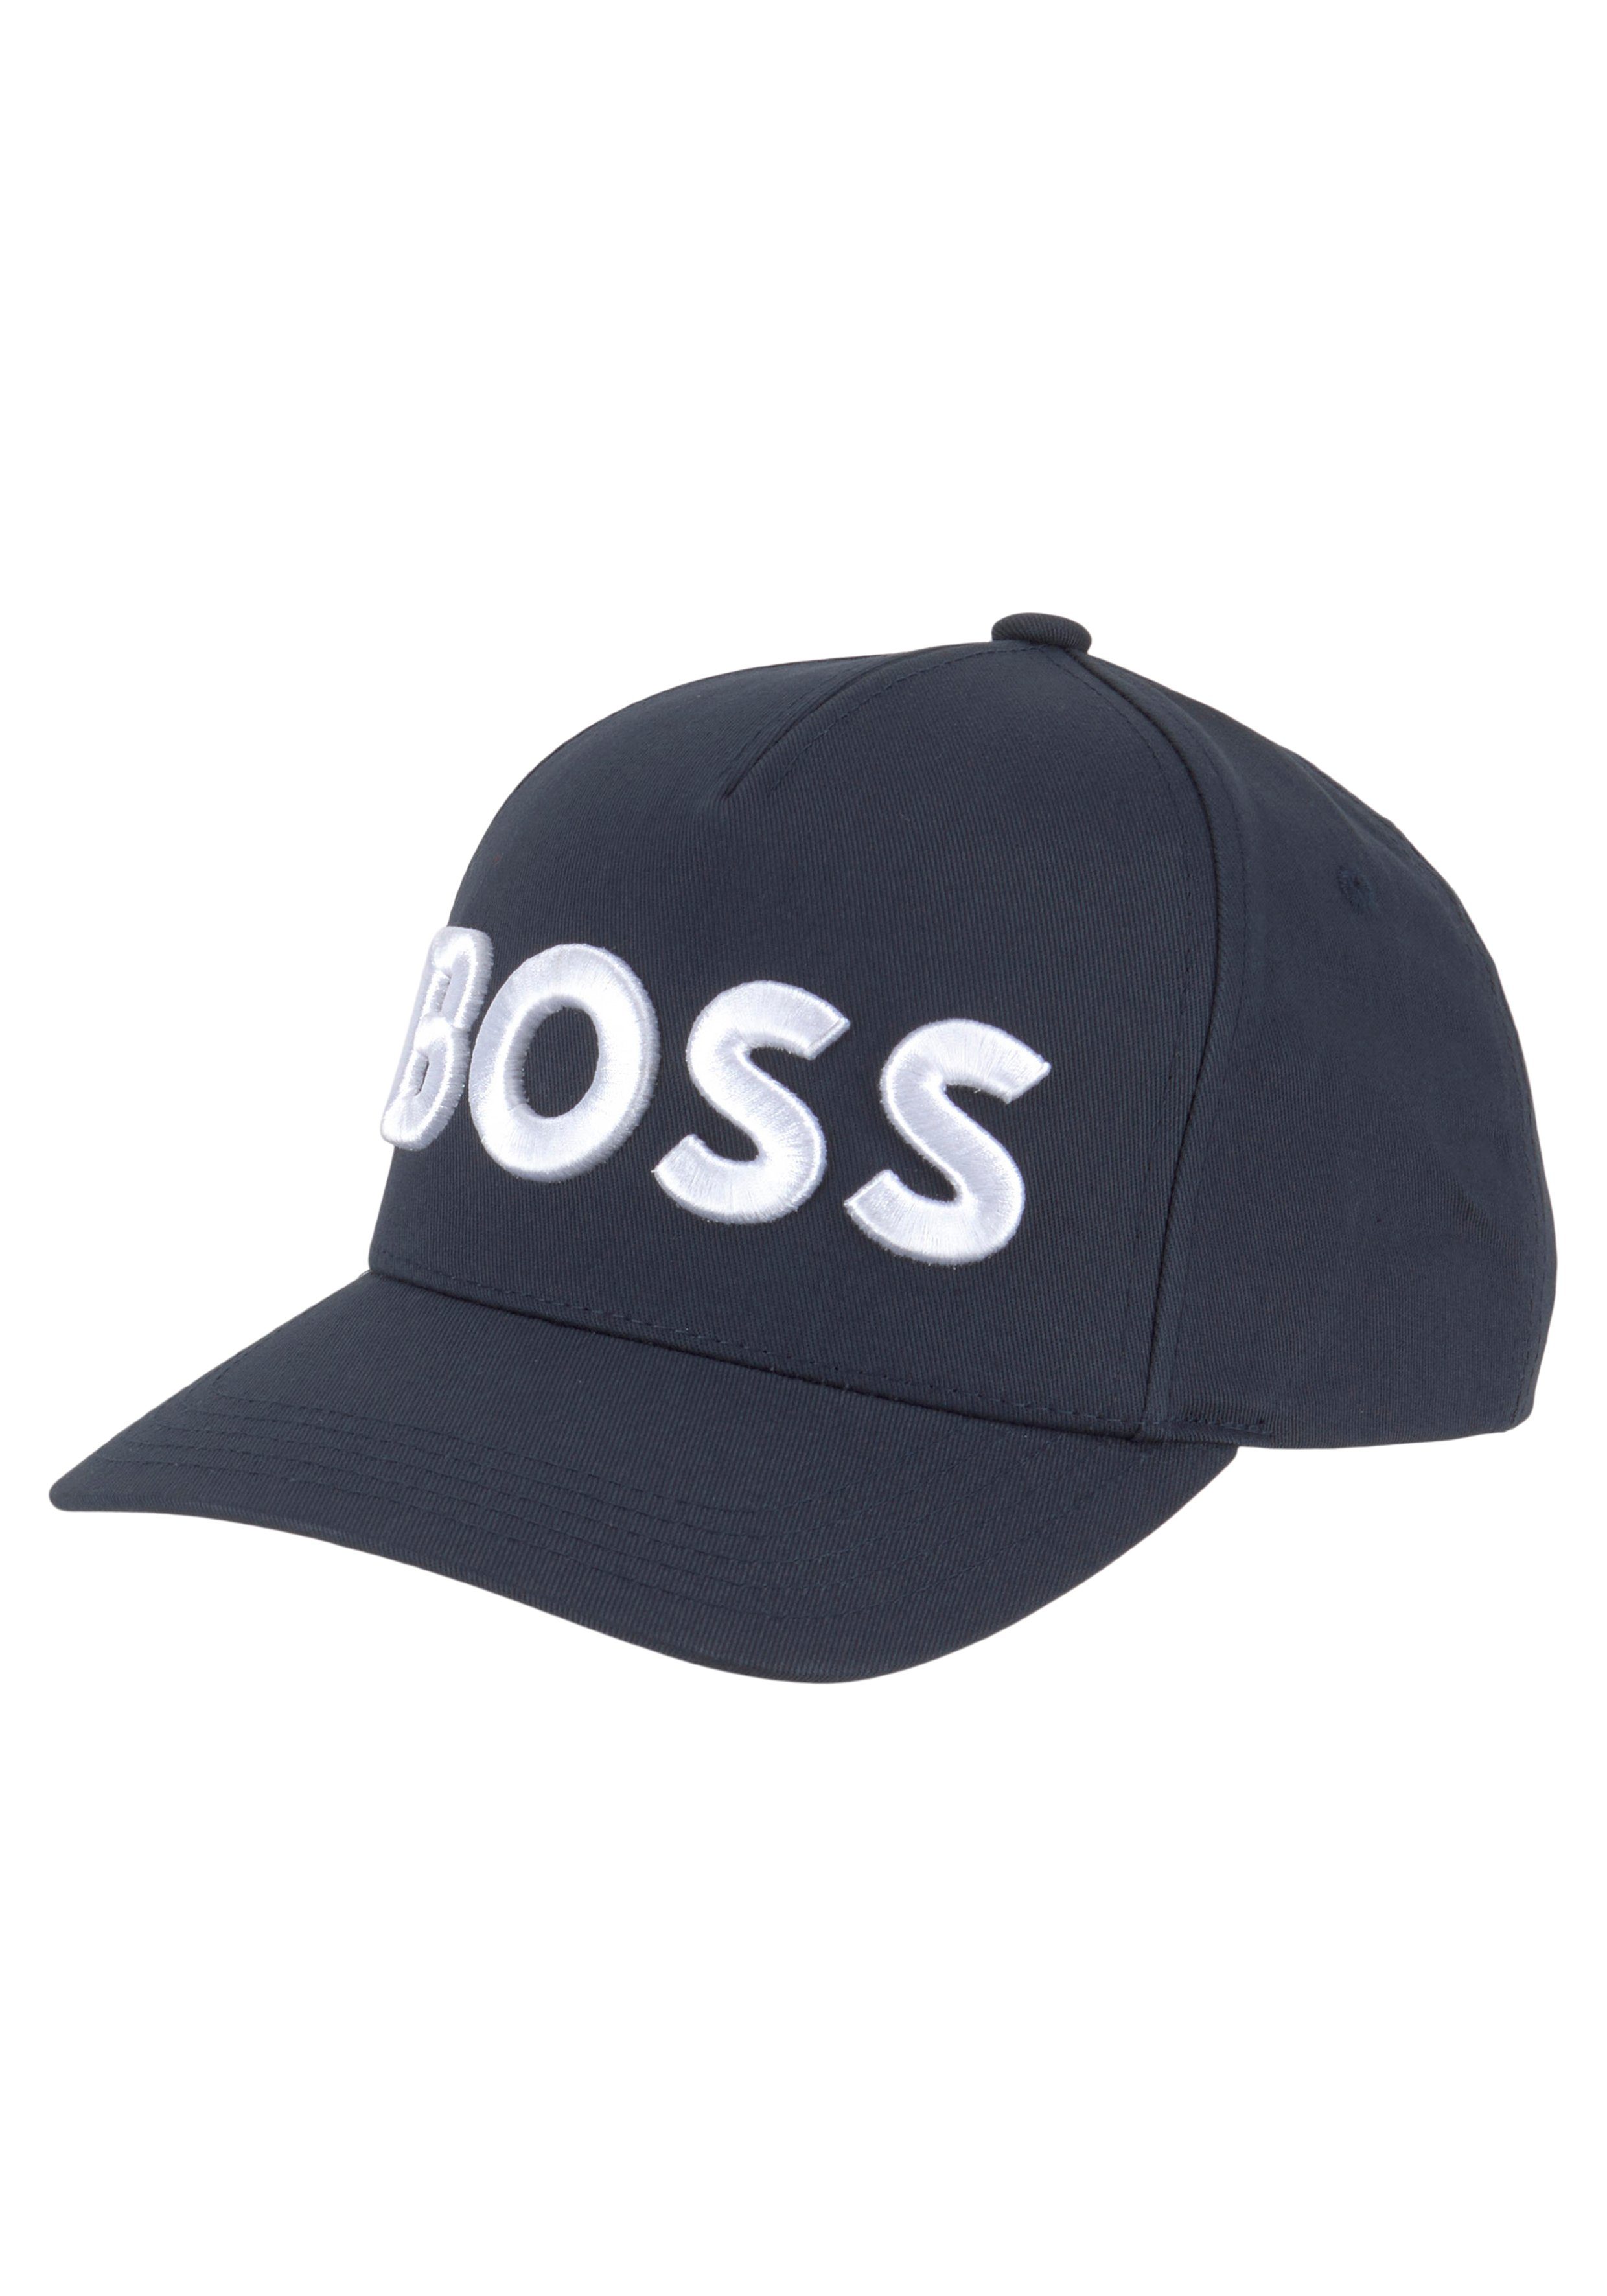 Baseball kontrastfarbenem dunkelblau Labelschriftzug Cap BOSS Sevile-BOSS-6 mit